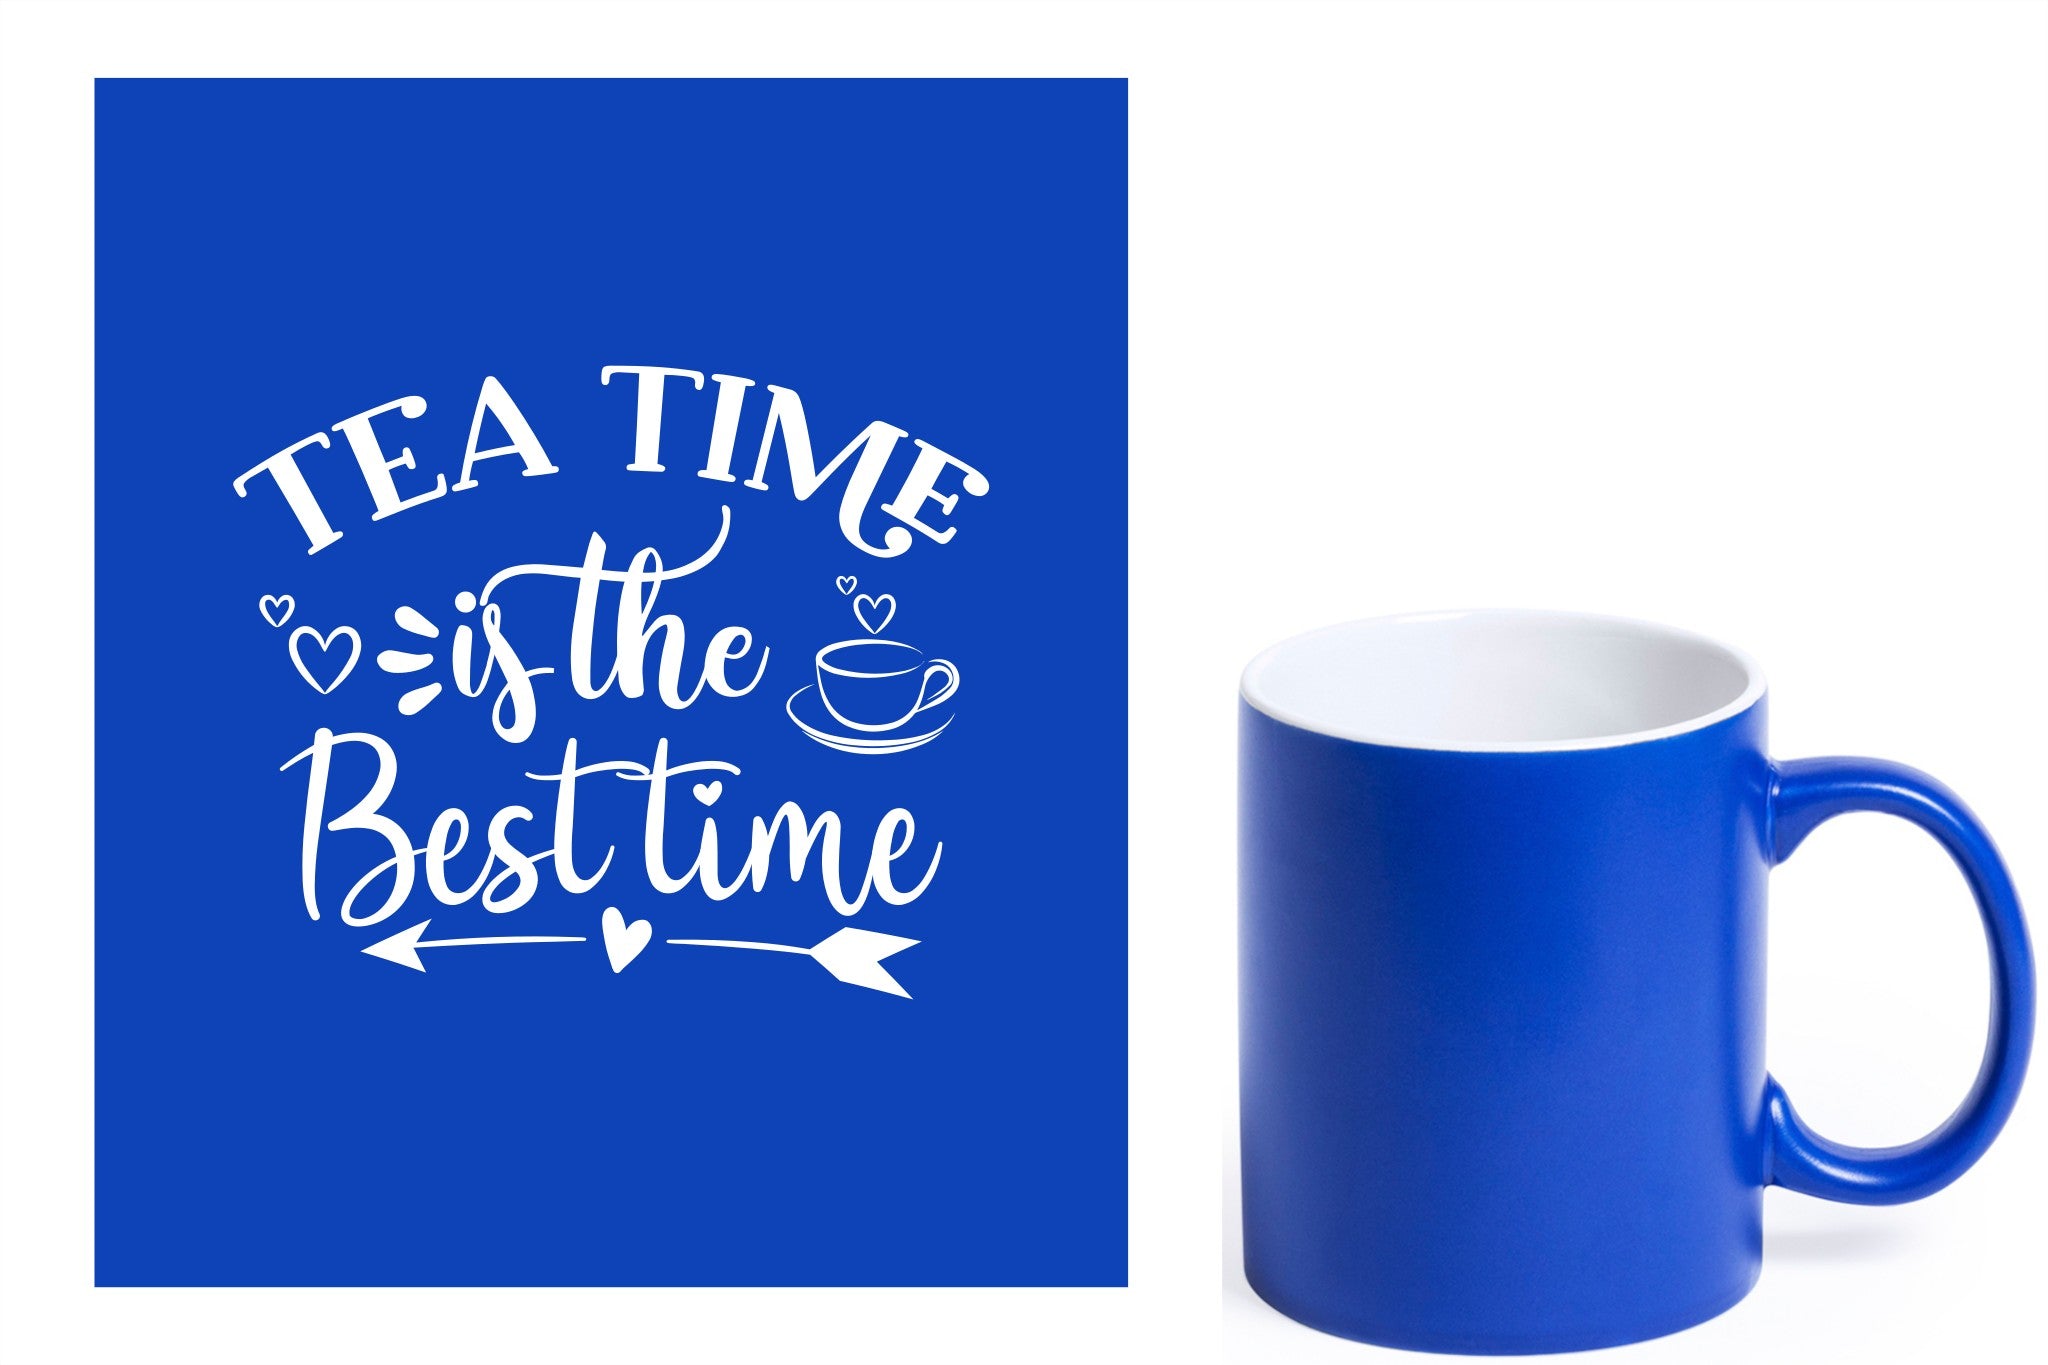 Blauwe keramische mok met witte gravure  'Tea time is the best time'.